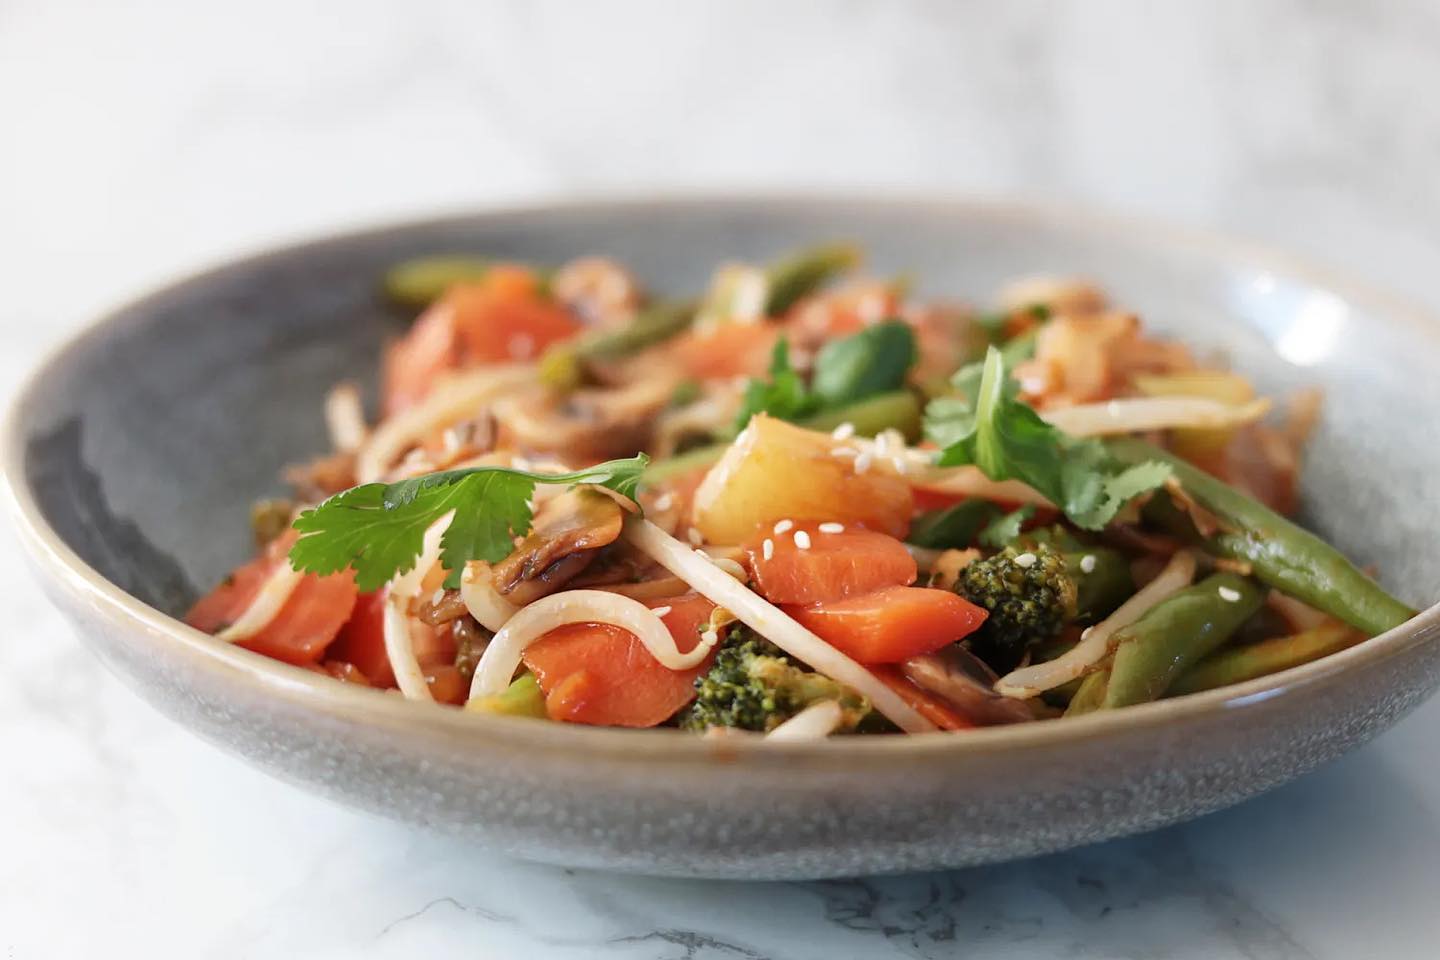 Een van de lekkerste manieren om left-over groenten te verwerken vind ik in soepjes of wokjes! 🍲 Deze wok heb ik gemaakt met zoet zure saus. ❤️ Heerlijk met broccoli of bloemkoolrijst! Hebben jullie deze al eens geprobeerd? 🥰 Het recept vind je op mijn website. Een mooie dag vandaag! ☀️ #koolhydraatarm #lowcarb #keto #oanhskitchen